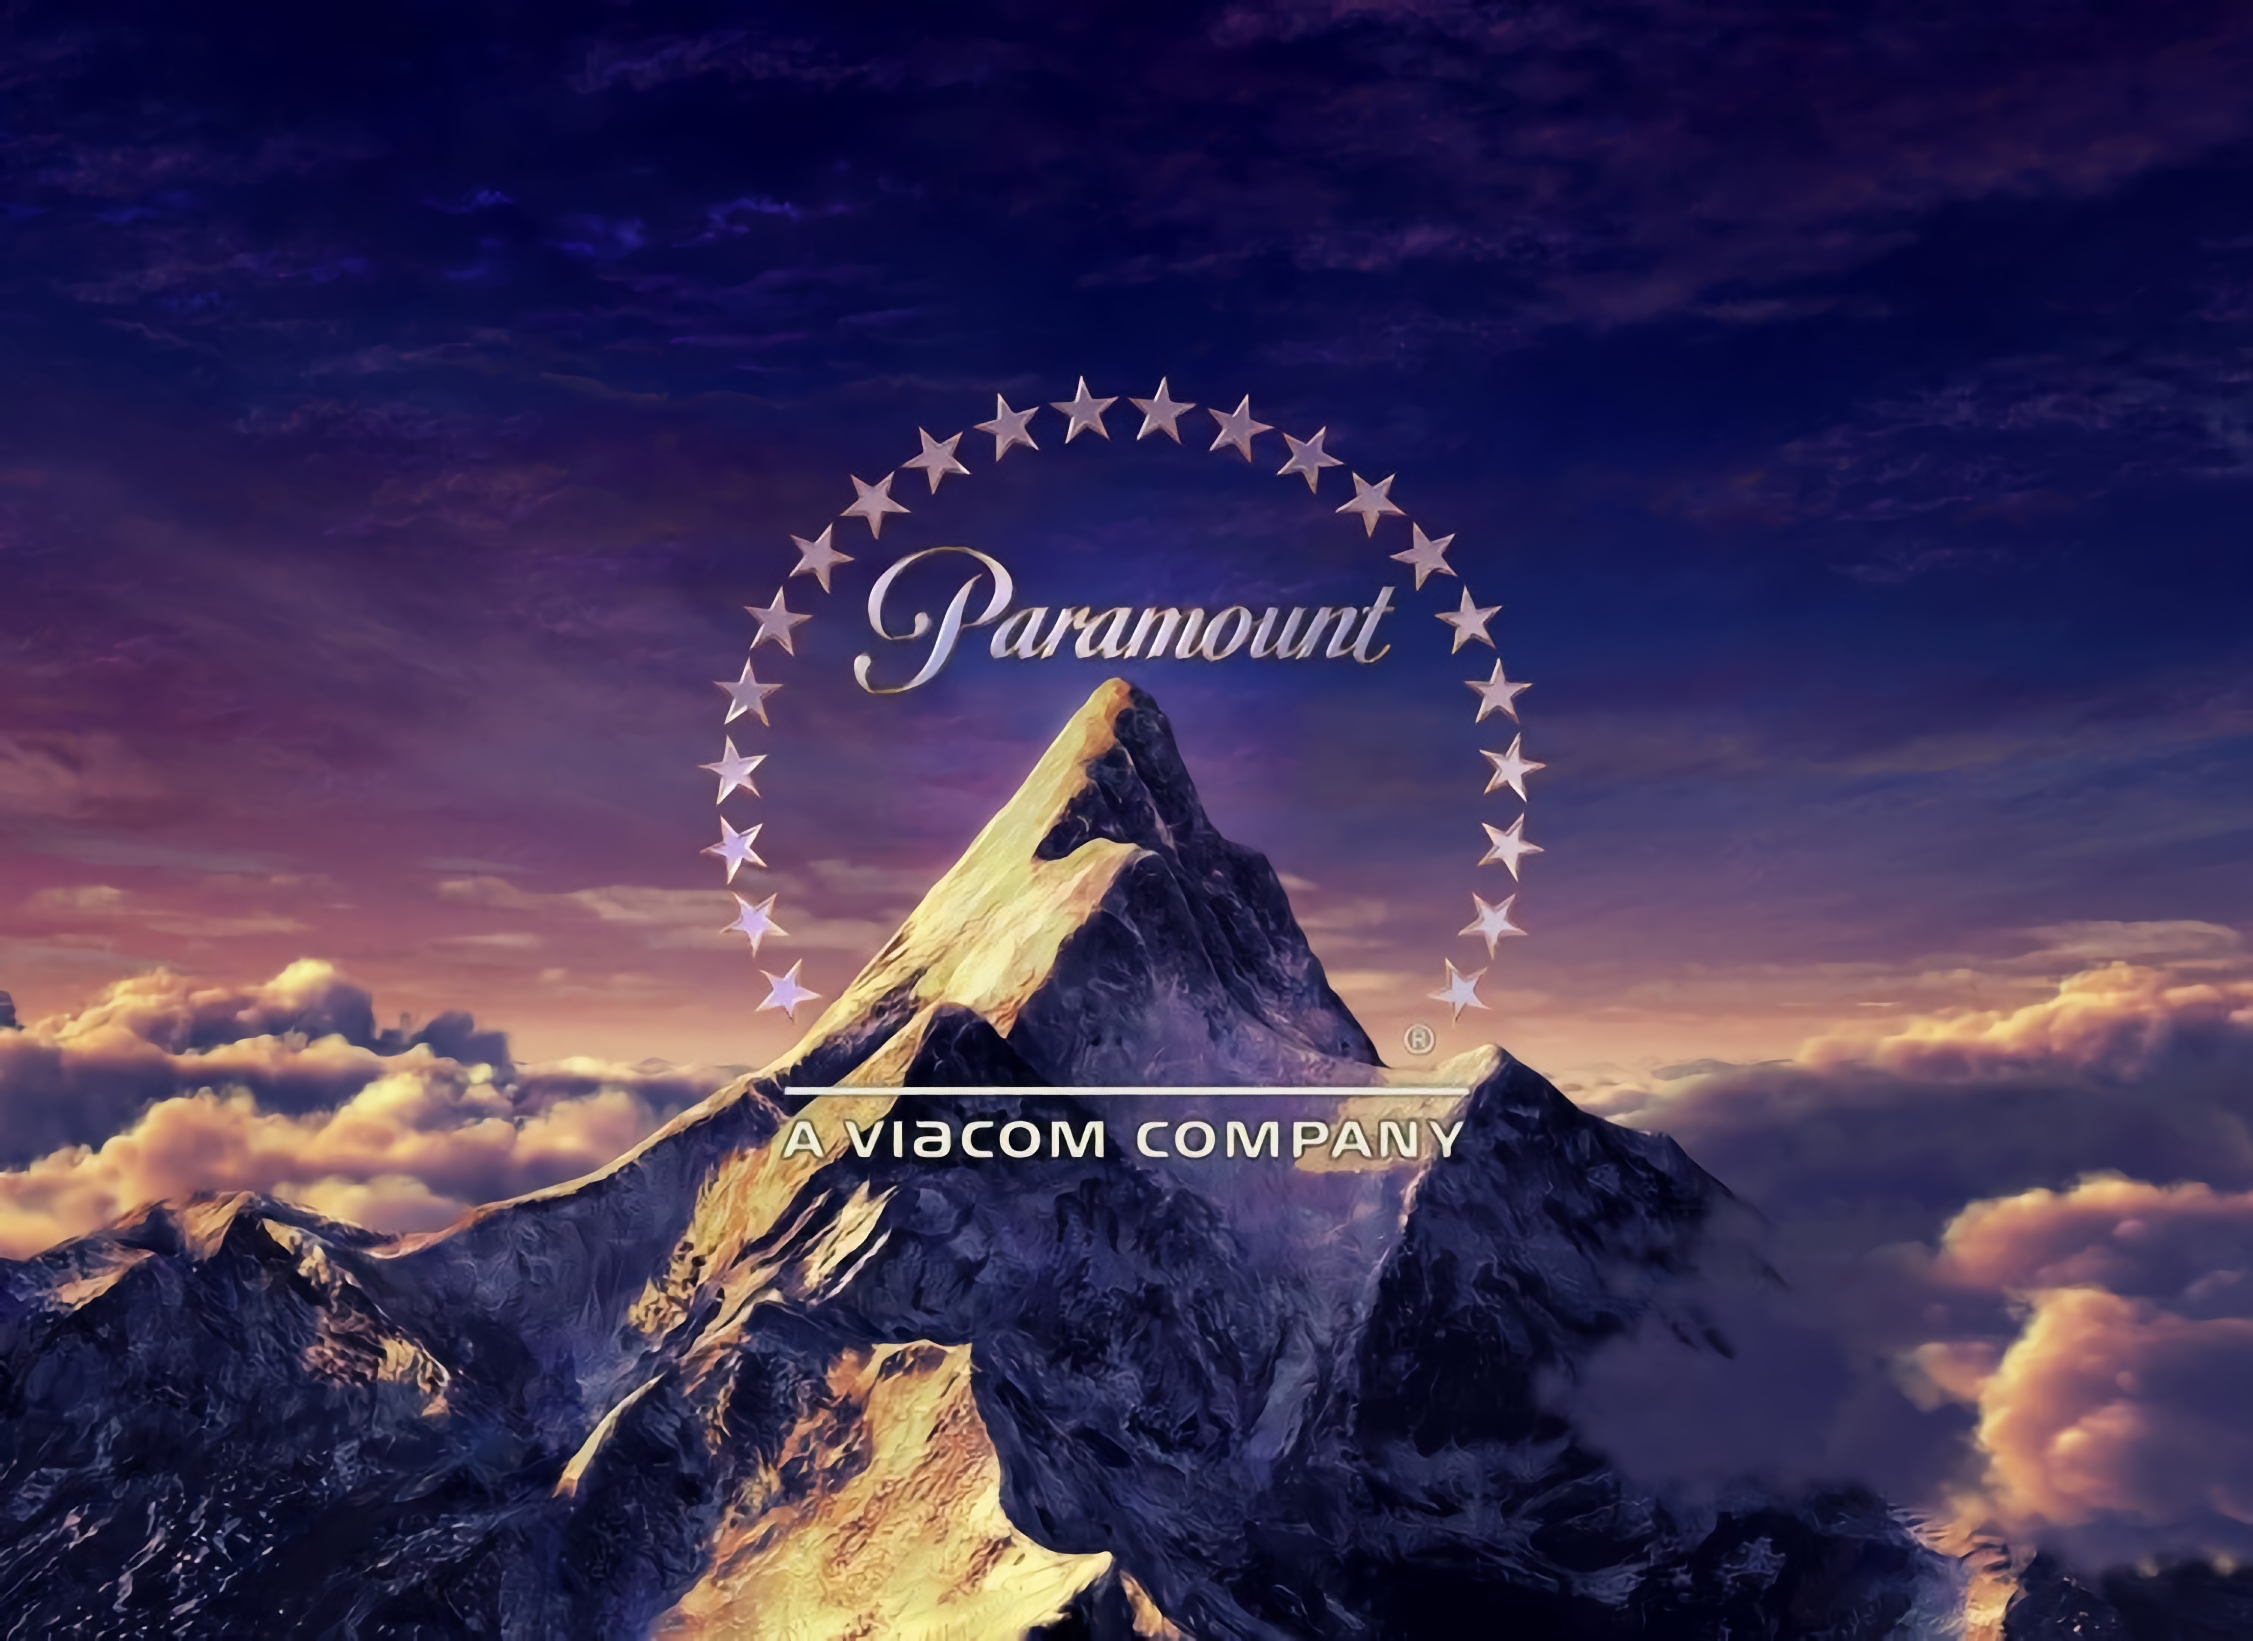 Lo studio cinematografico Paramount interrompe i lavori in Russia